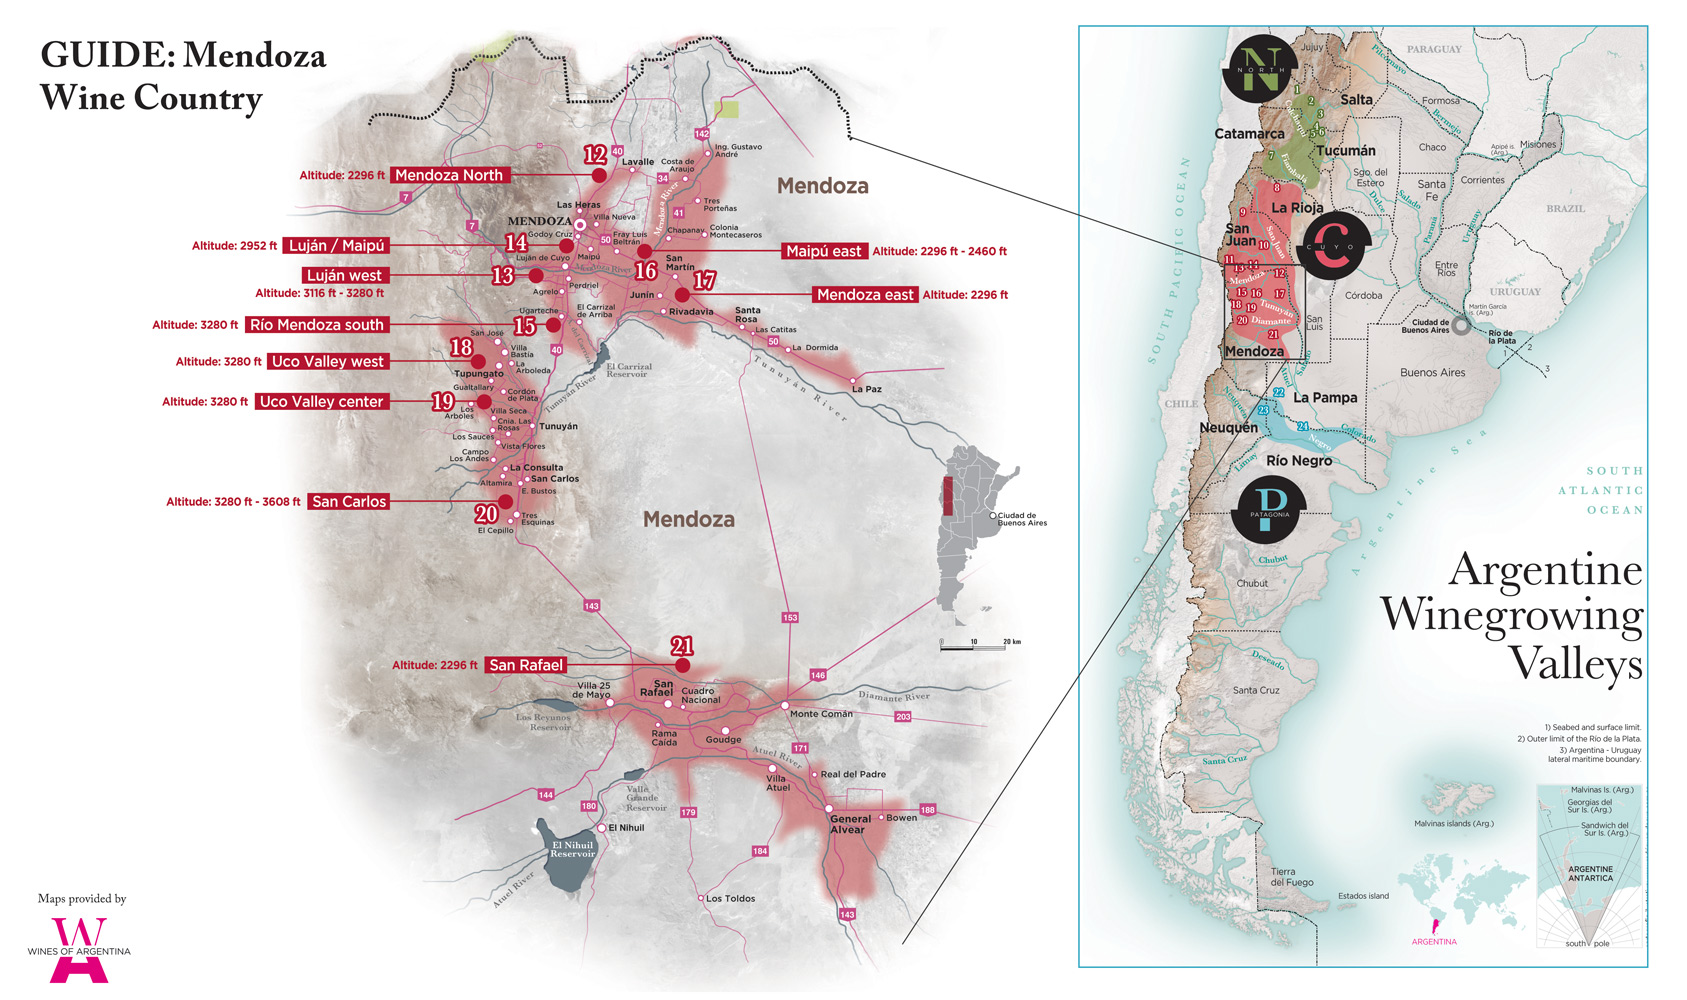 Mendoza - Argentina's Largest Wine Region